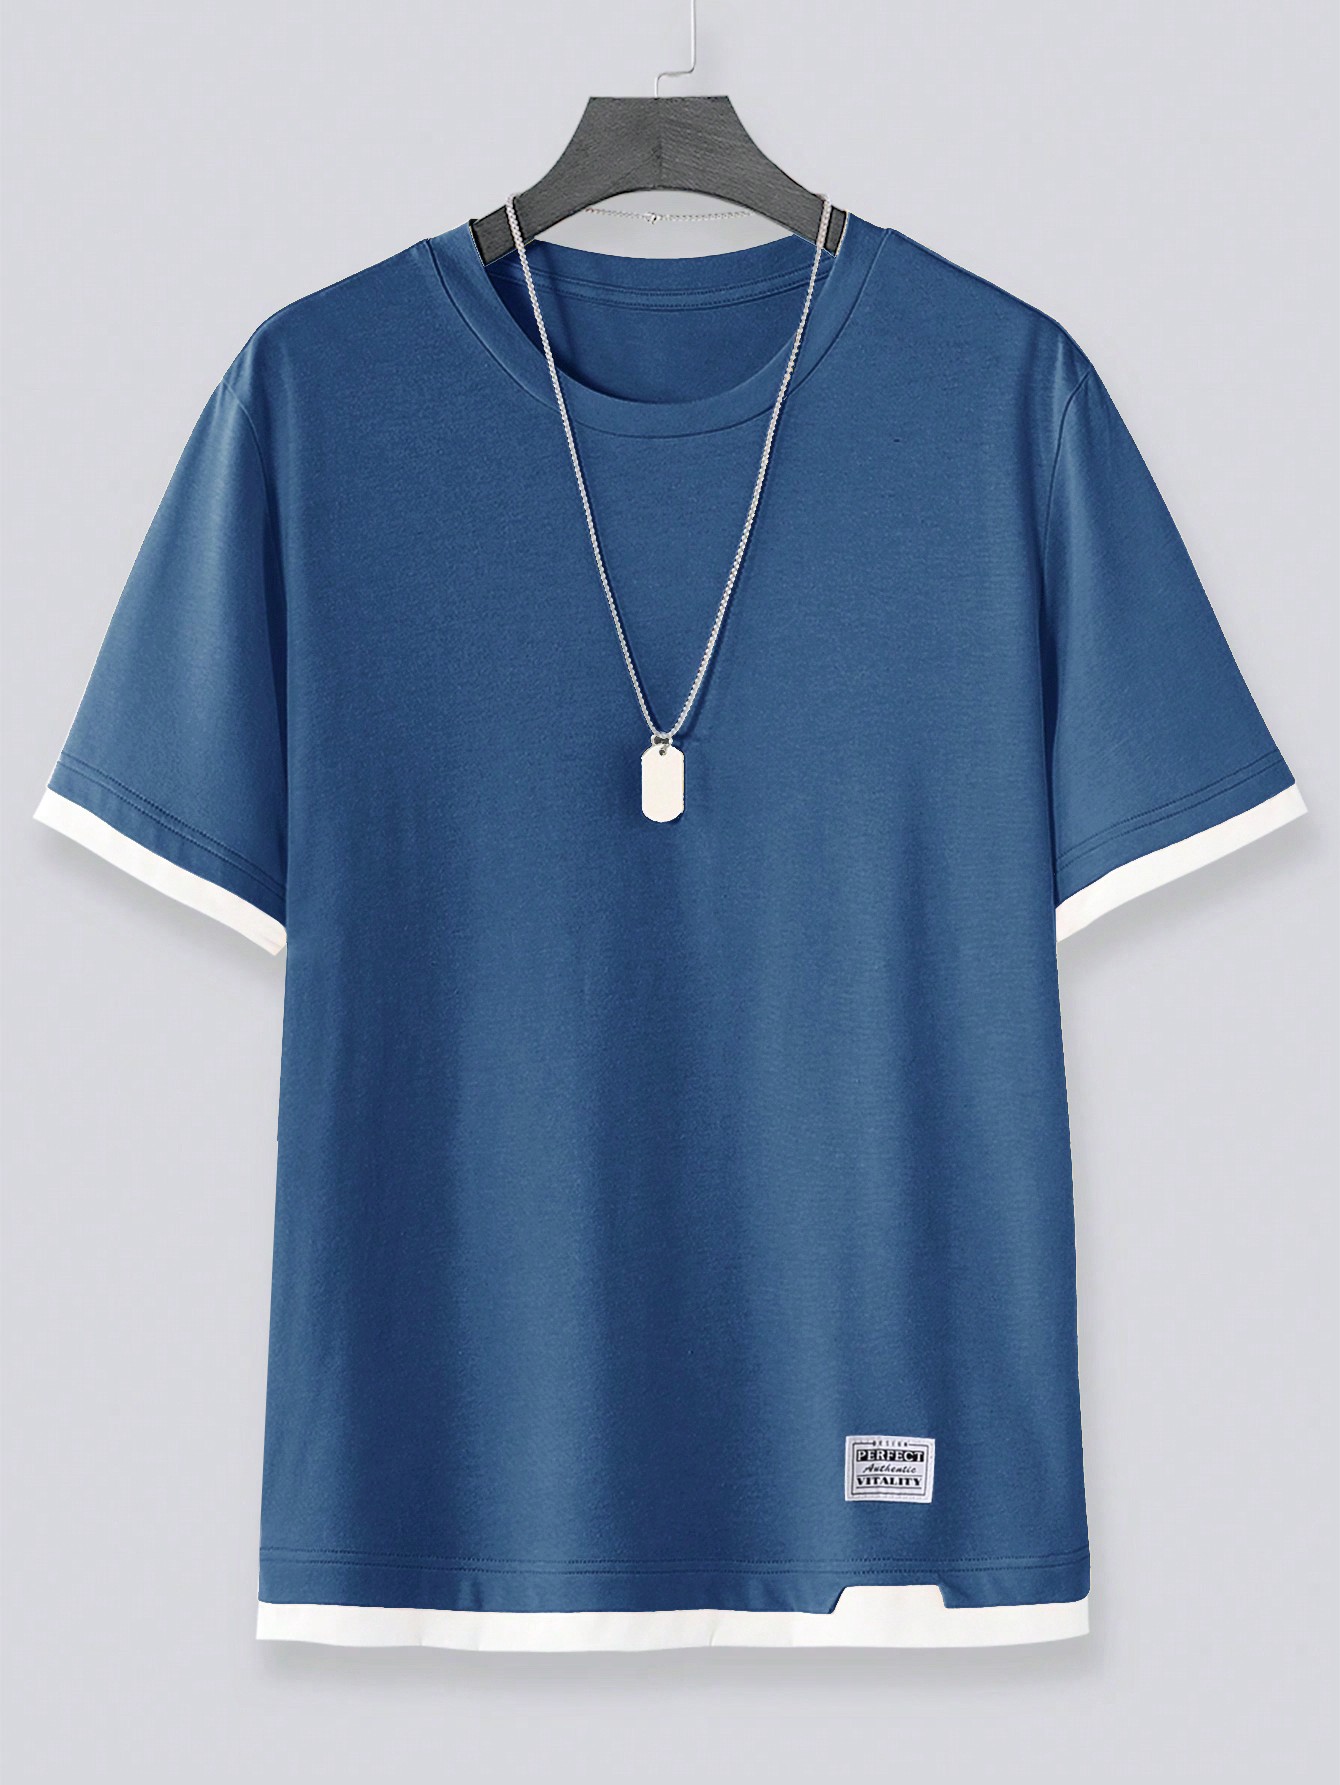 Мужская футболка Manfinity Hypemode с цветными блоками и контрастной строчкой, пыльный синий футболка мужская с контрастной отделкой madison 170 насыщенный зеленый белый размер xl